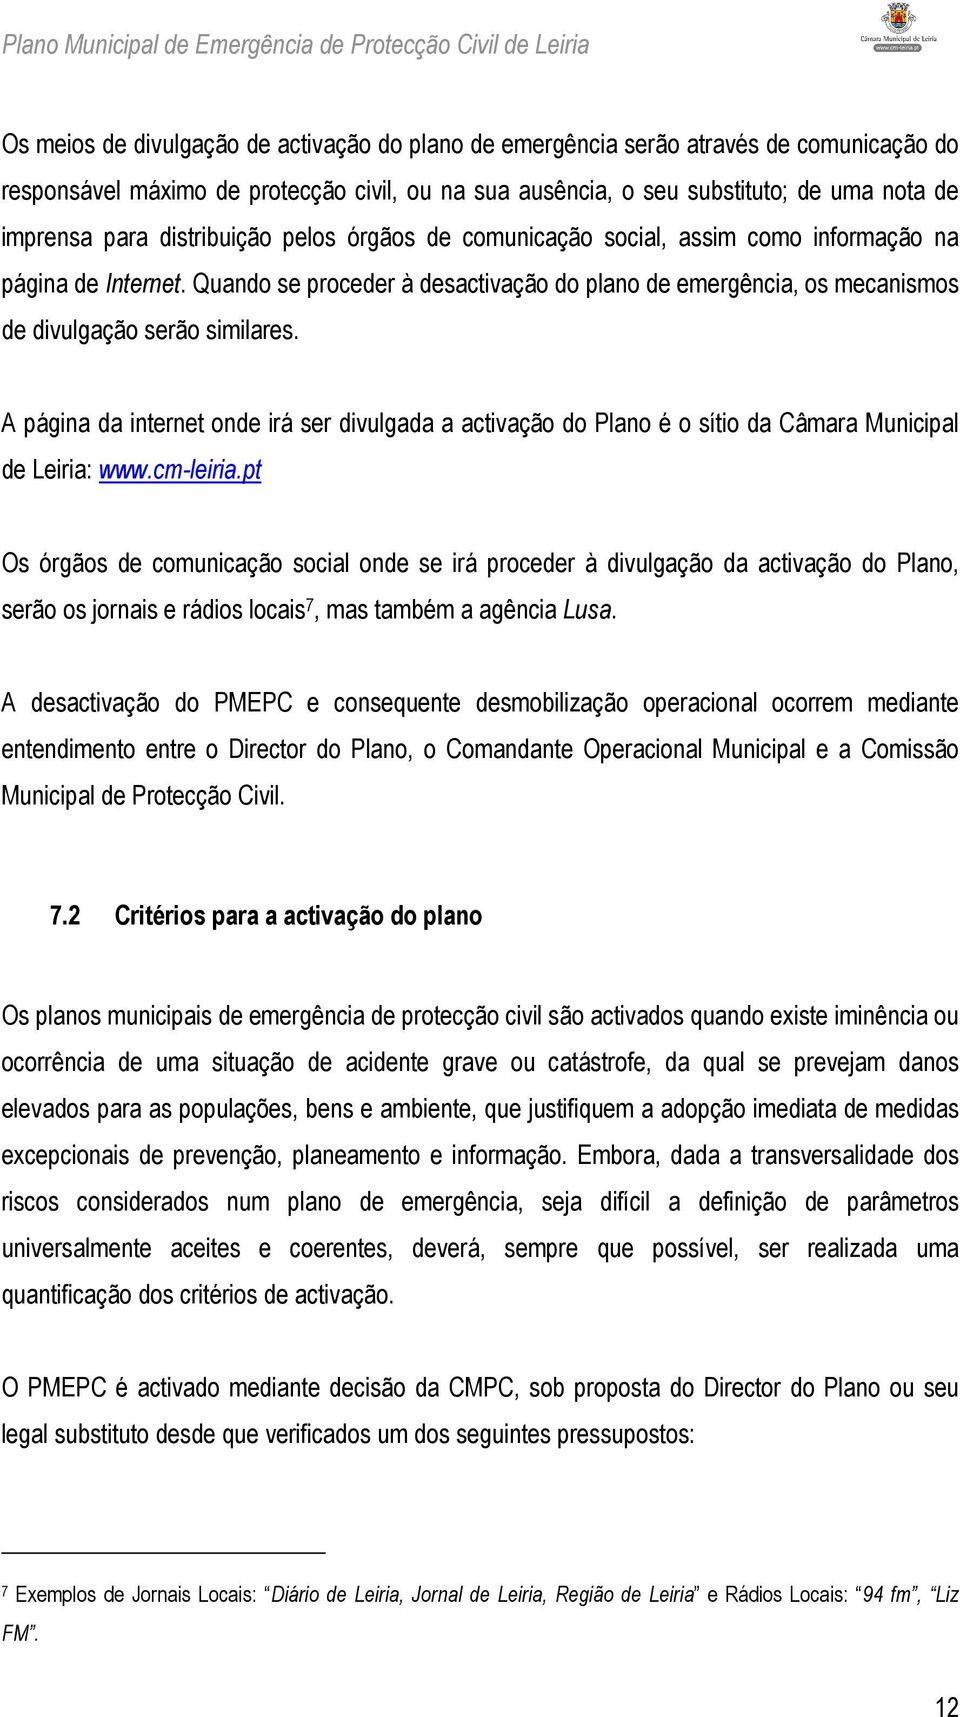 A página da internet onde irá ser divulgada a activação do Plano é o sítio da Câmara Municipal de Leiria: www.cm-leiria.